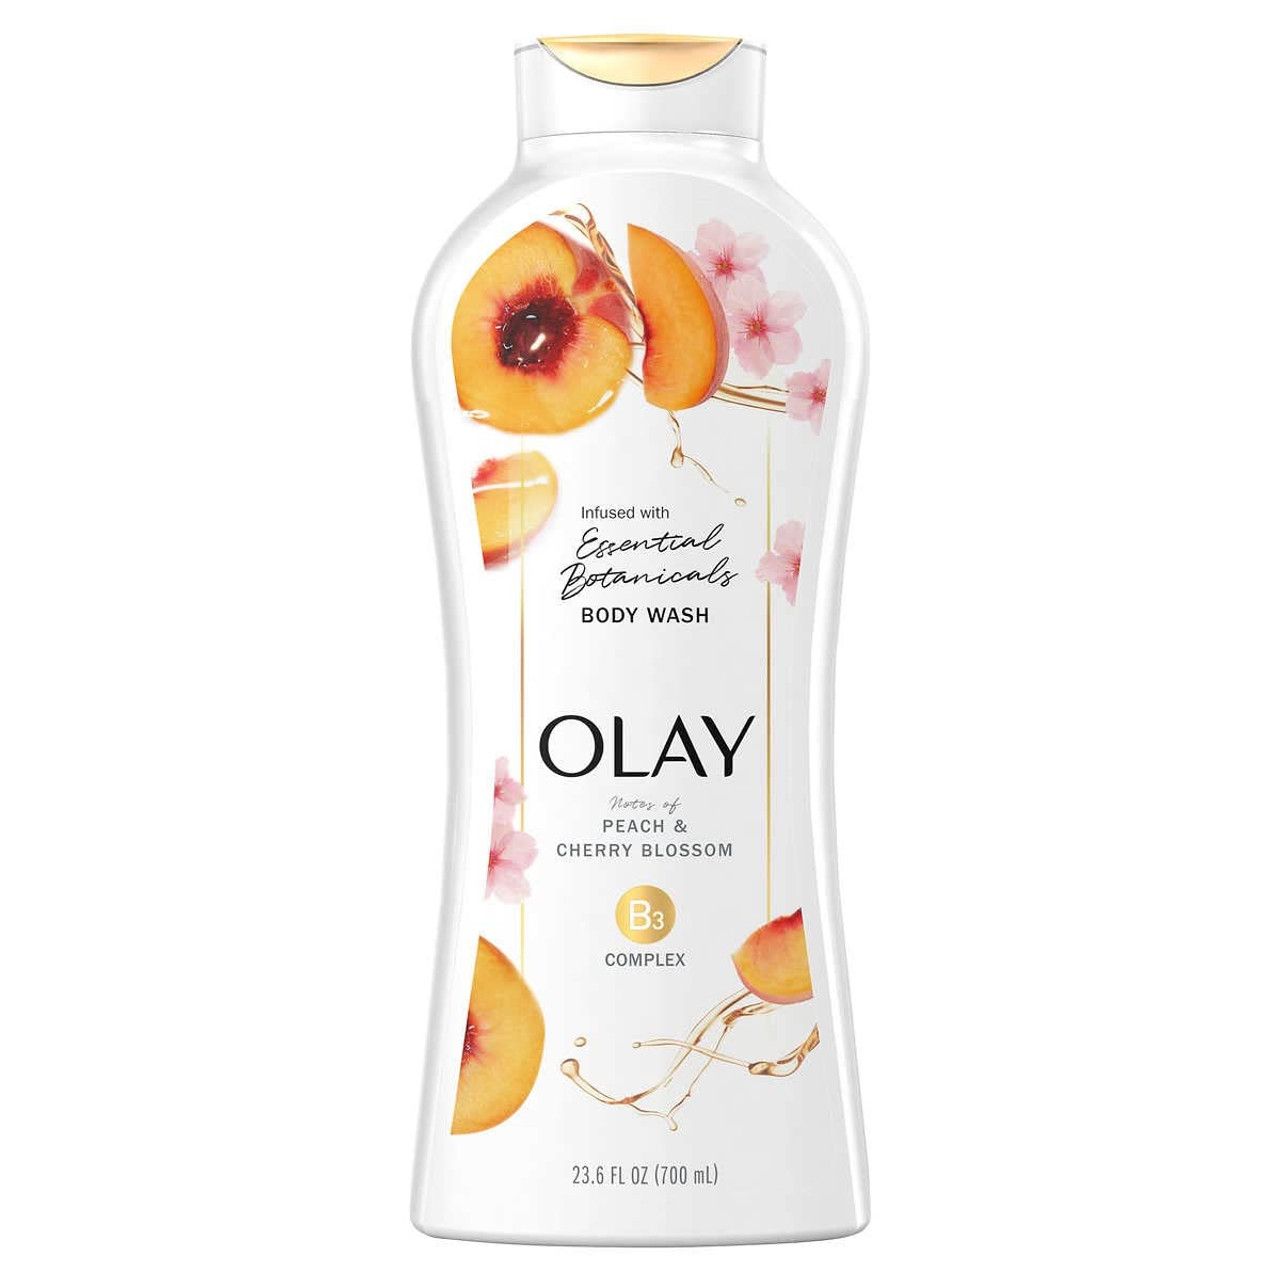  Sữa tắm Olay Essential Botanicals Body Wash B3 Complex 23.6Oz 700ml (Hương Peach & Cherry Blossom) 